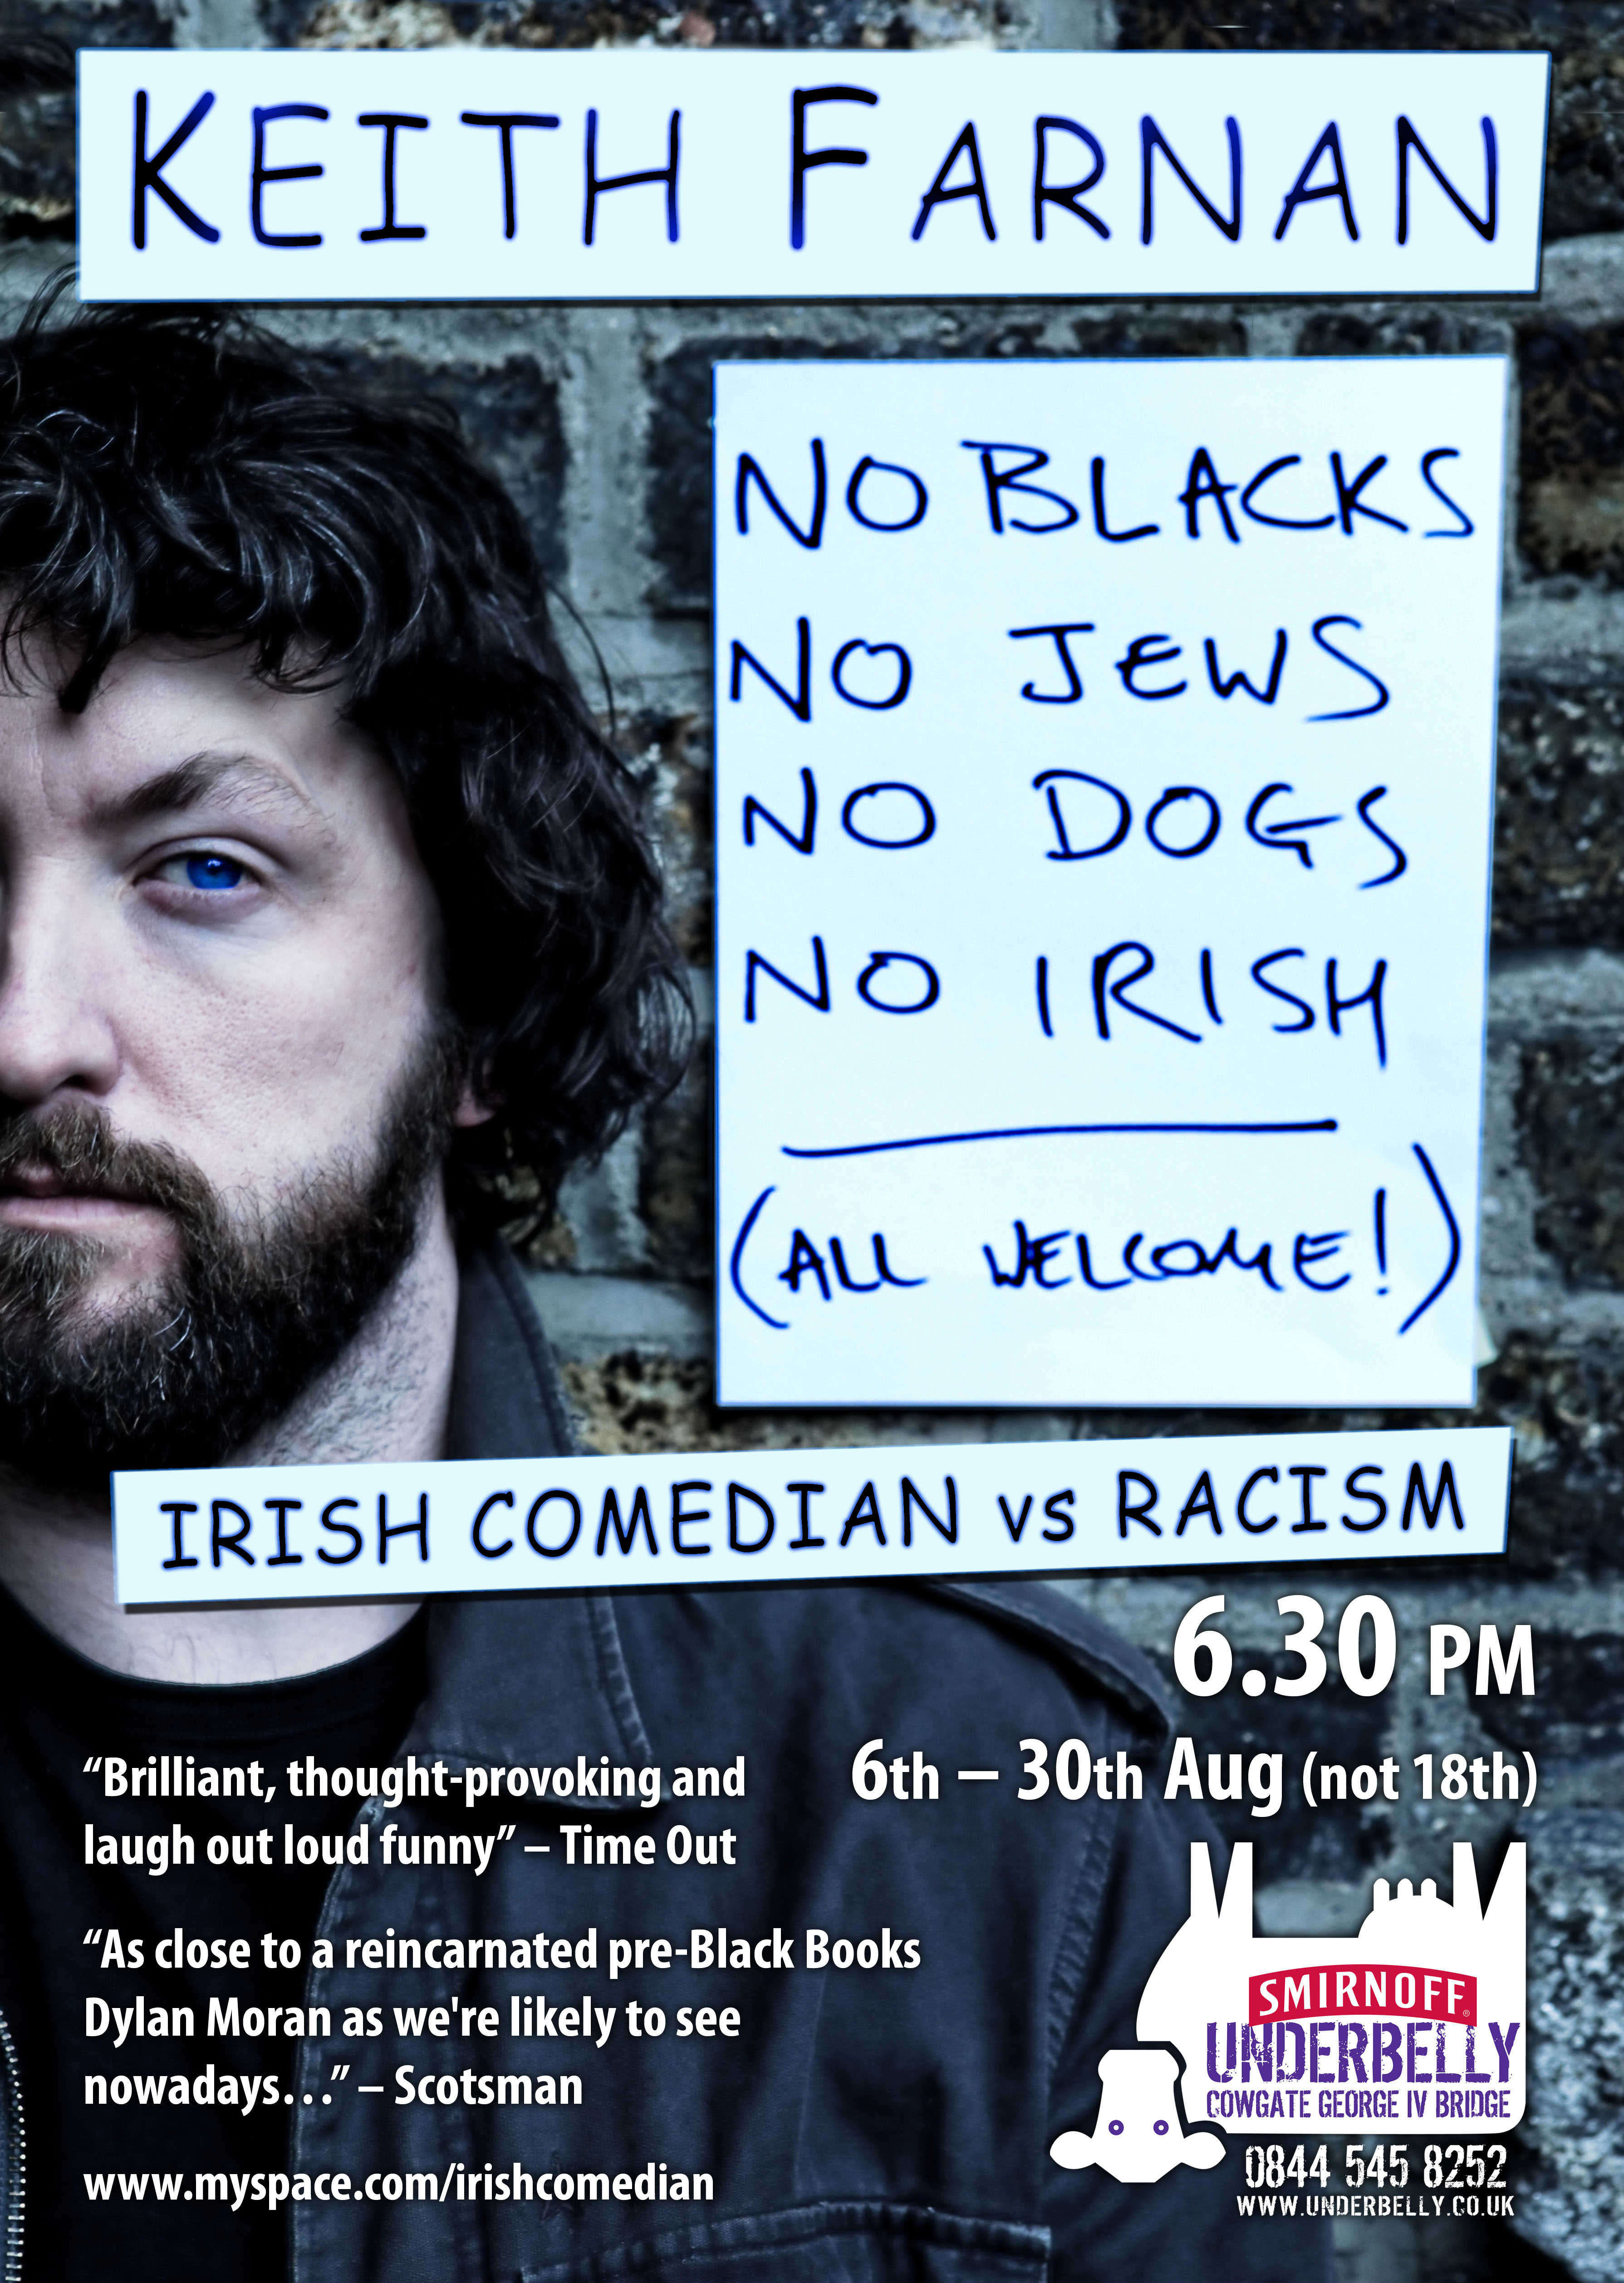 No Blacks. No Jews. No Dogs. No Irish. All Welcome – Comedy versus Racism!